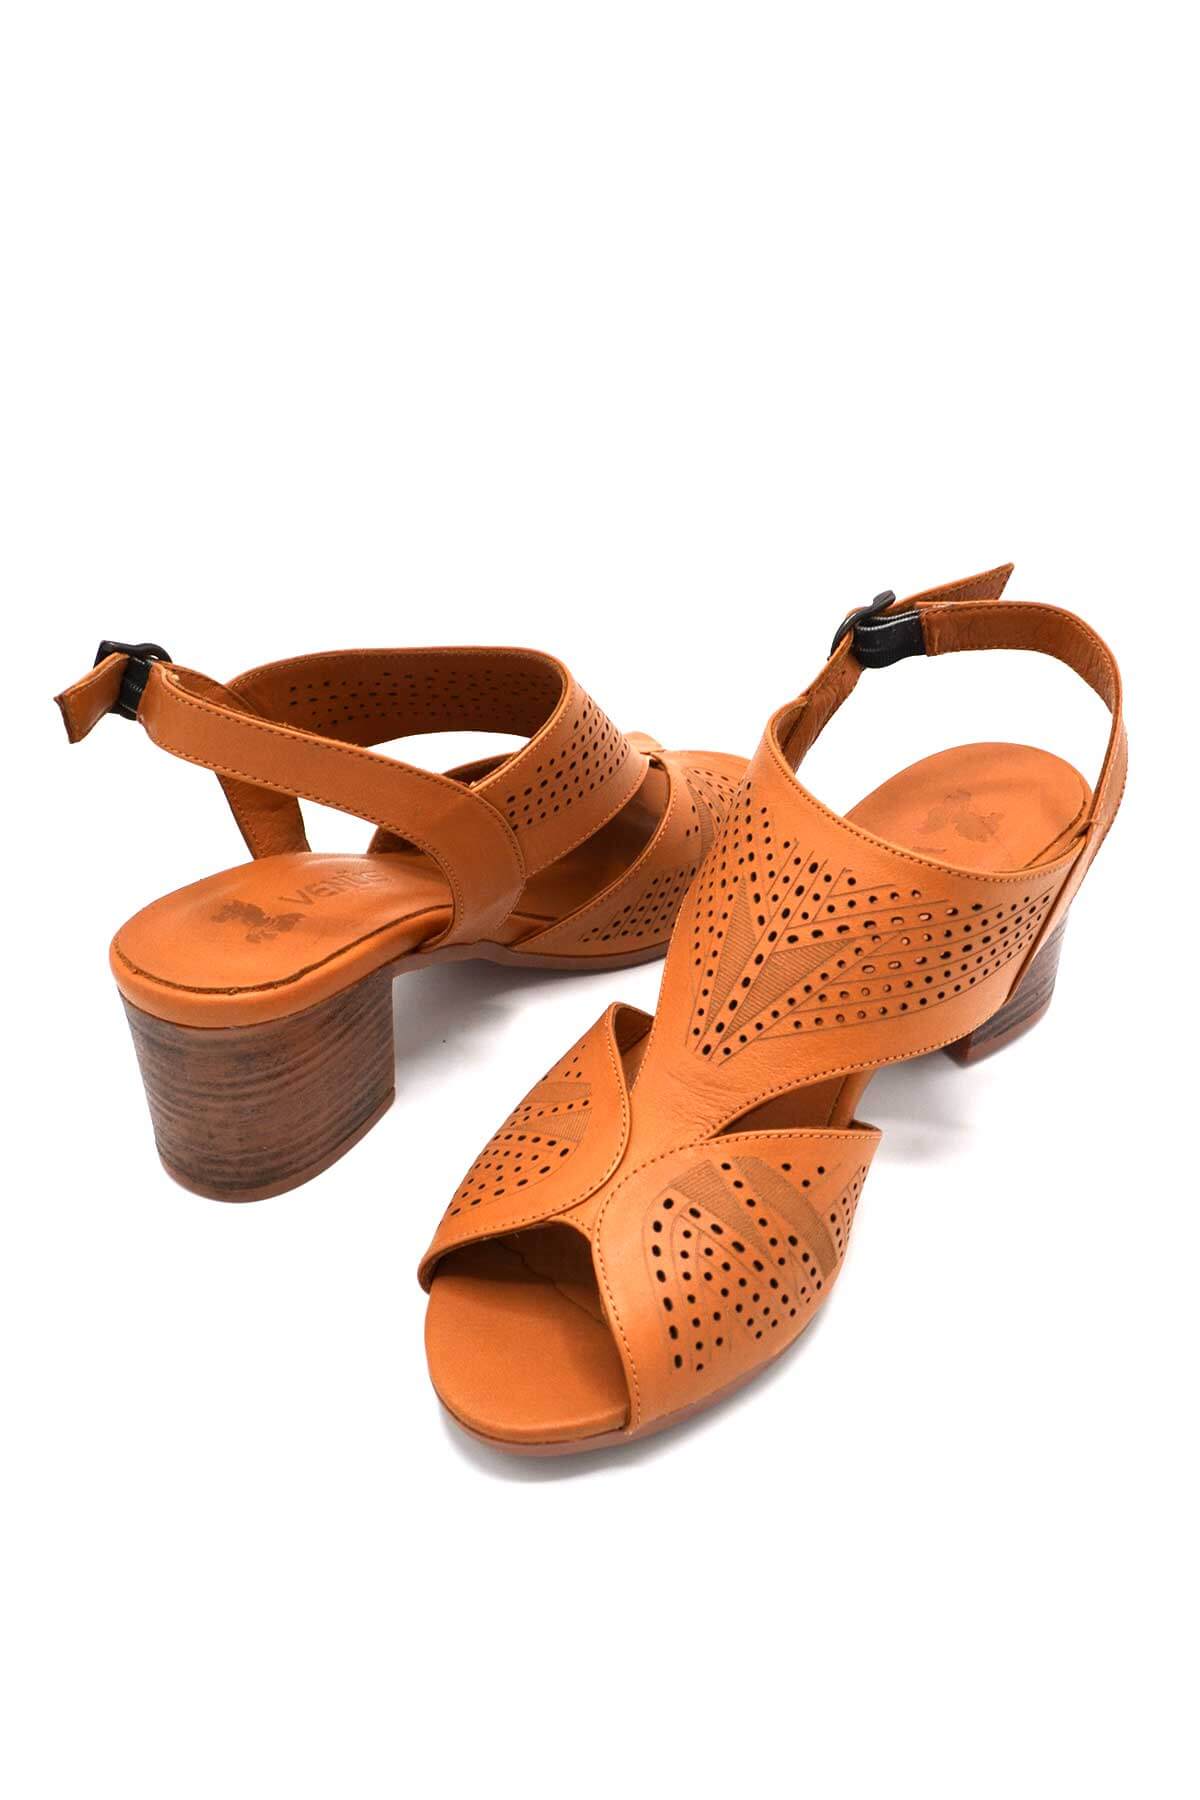 Kadın Topuklu Deri Sandalet Taba 1857213Y - Thumbnail